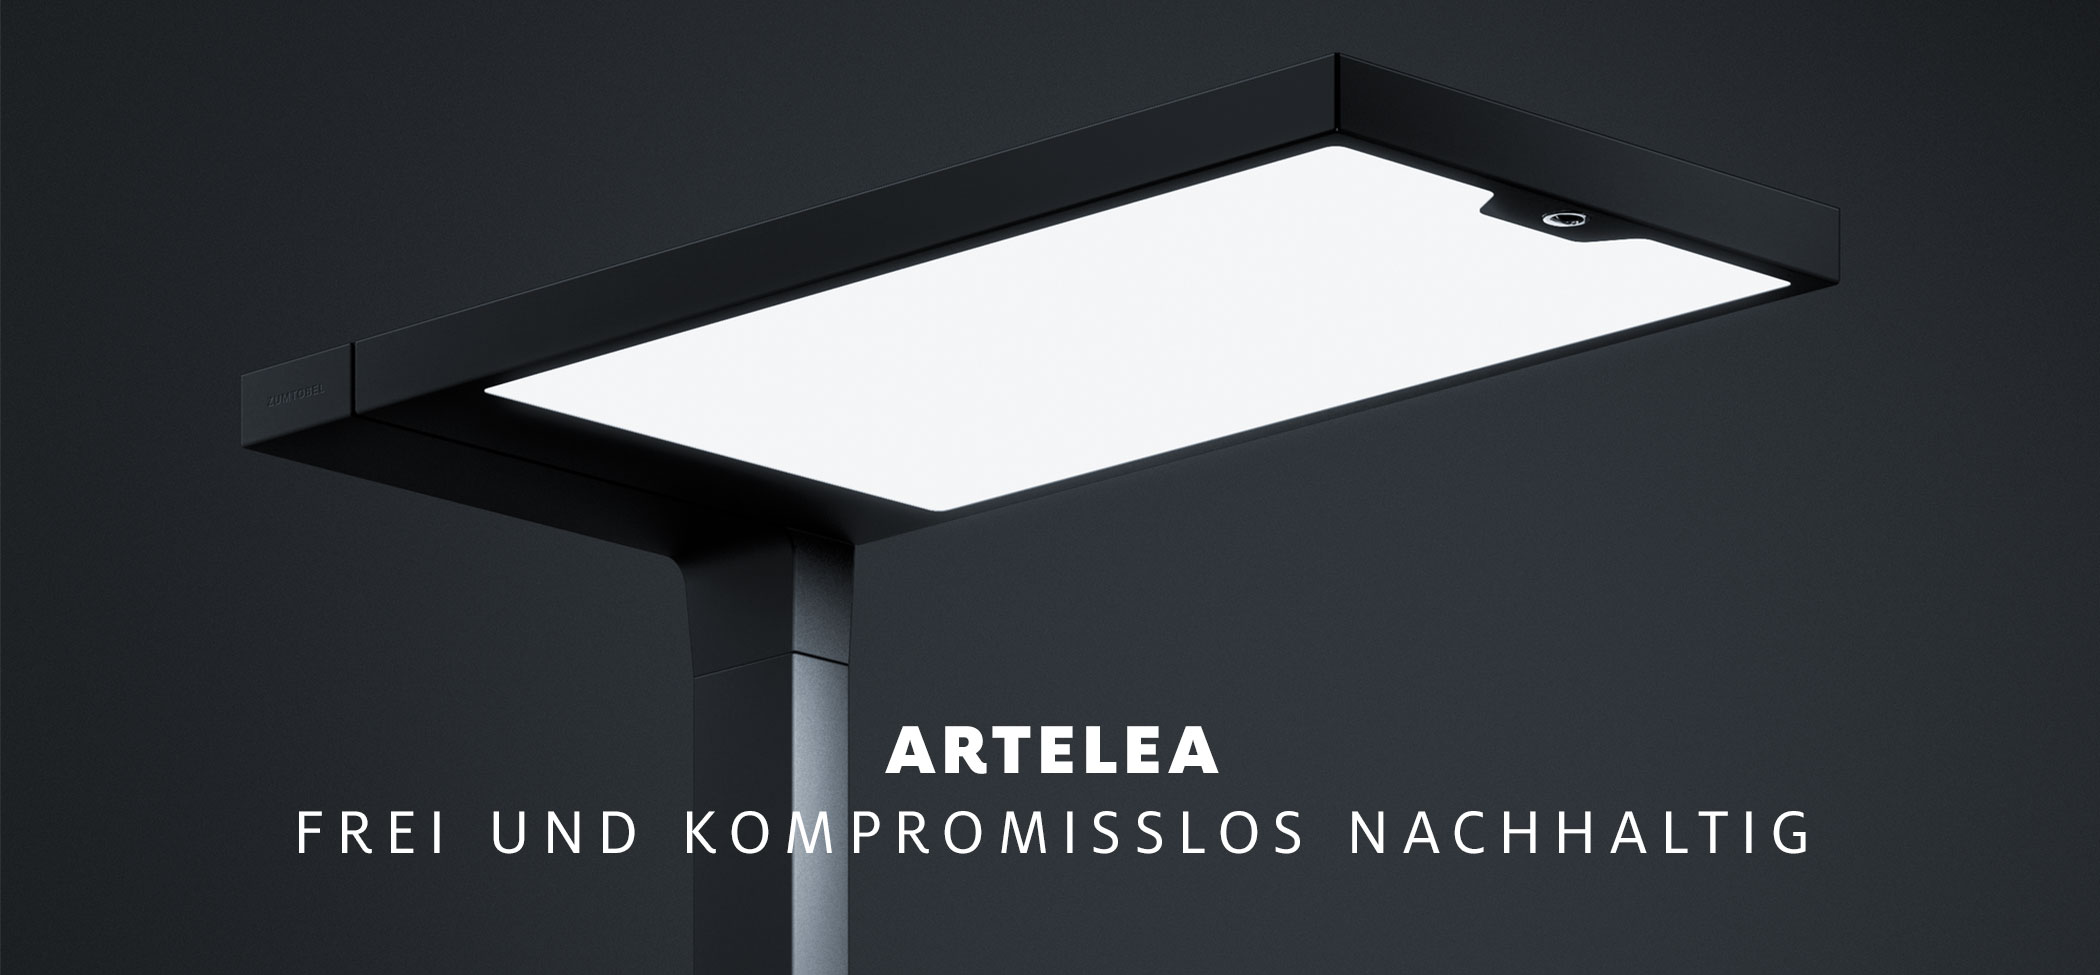 Innovative LED-Lichtlösungen und Lichtmanagement aus Österreich - Zumtobel